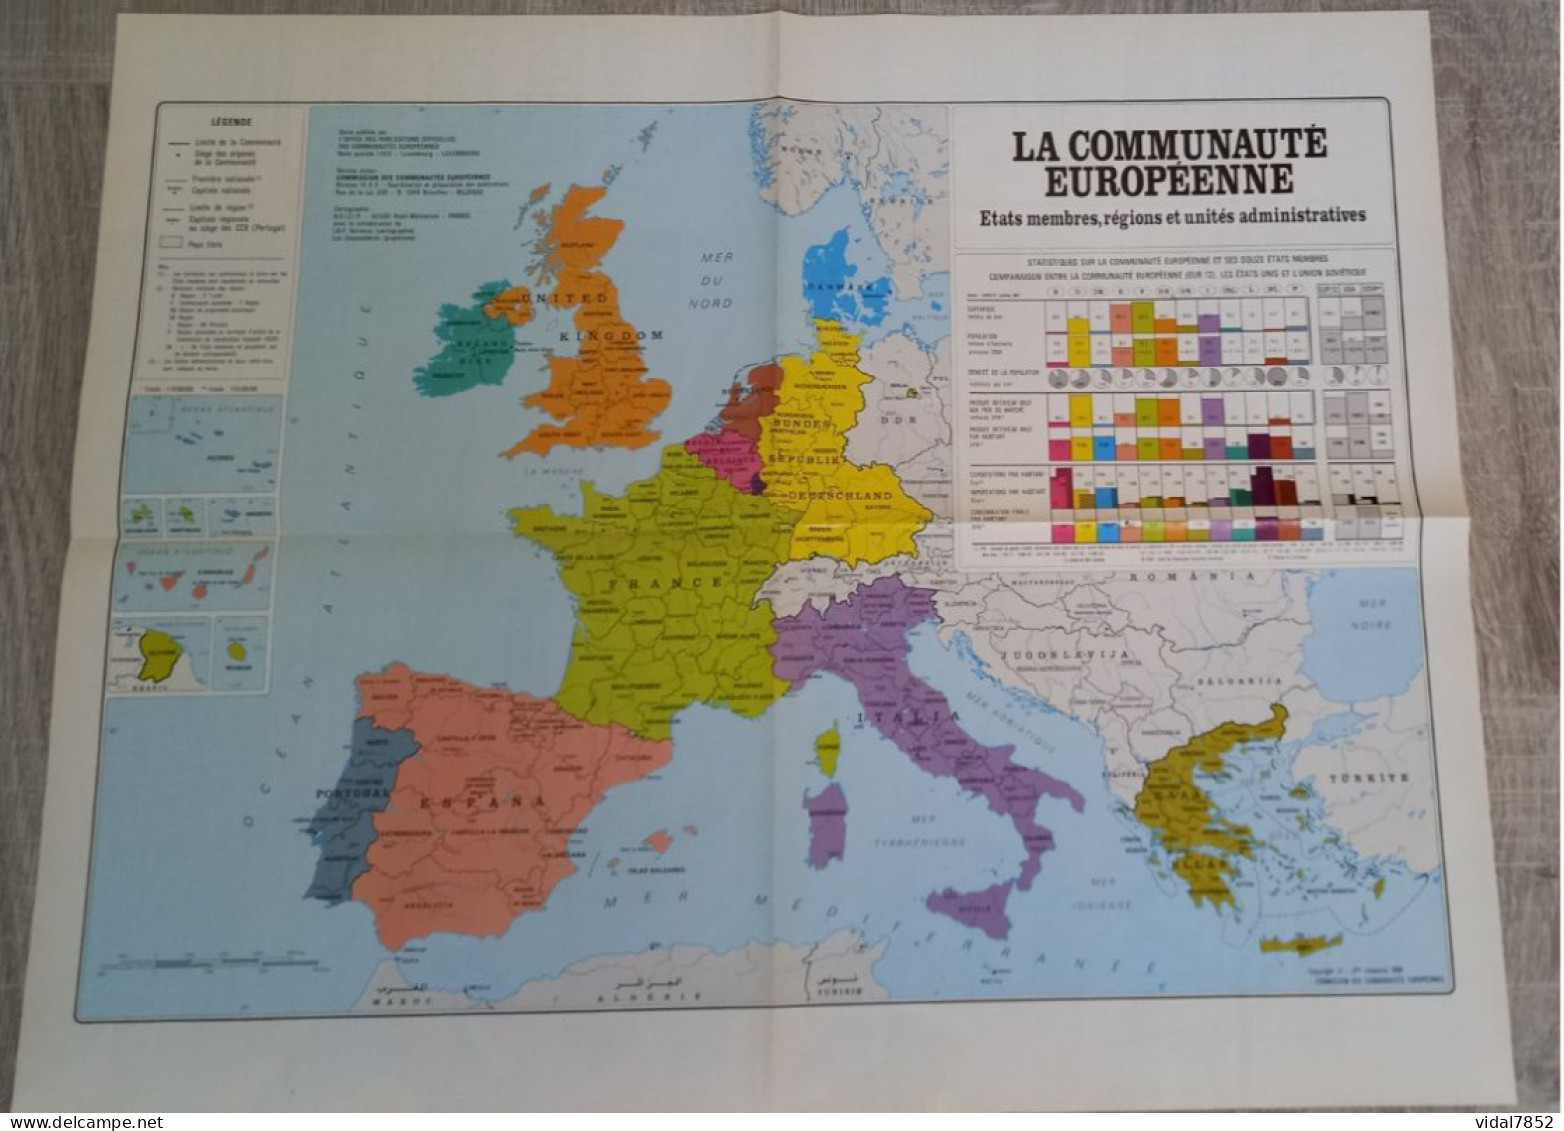 Calendrier-Almanach Des P.T.T 1990-Poster Intérieur Communauté Europèenne-Parc Axtérix Département AIN-01-Référence 421 - Big : 1981-90